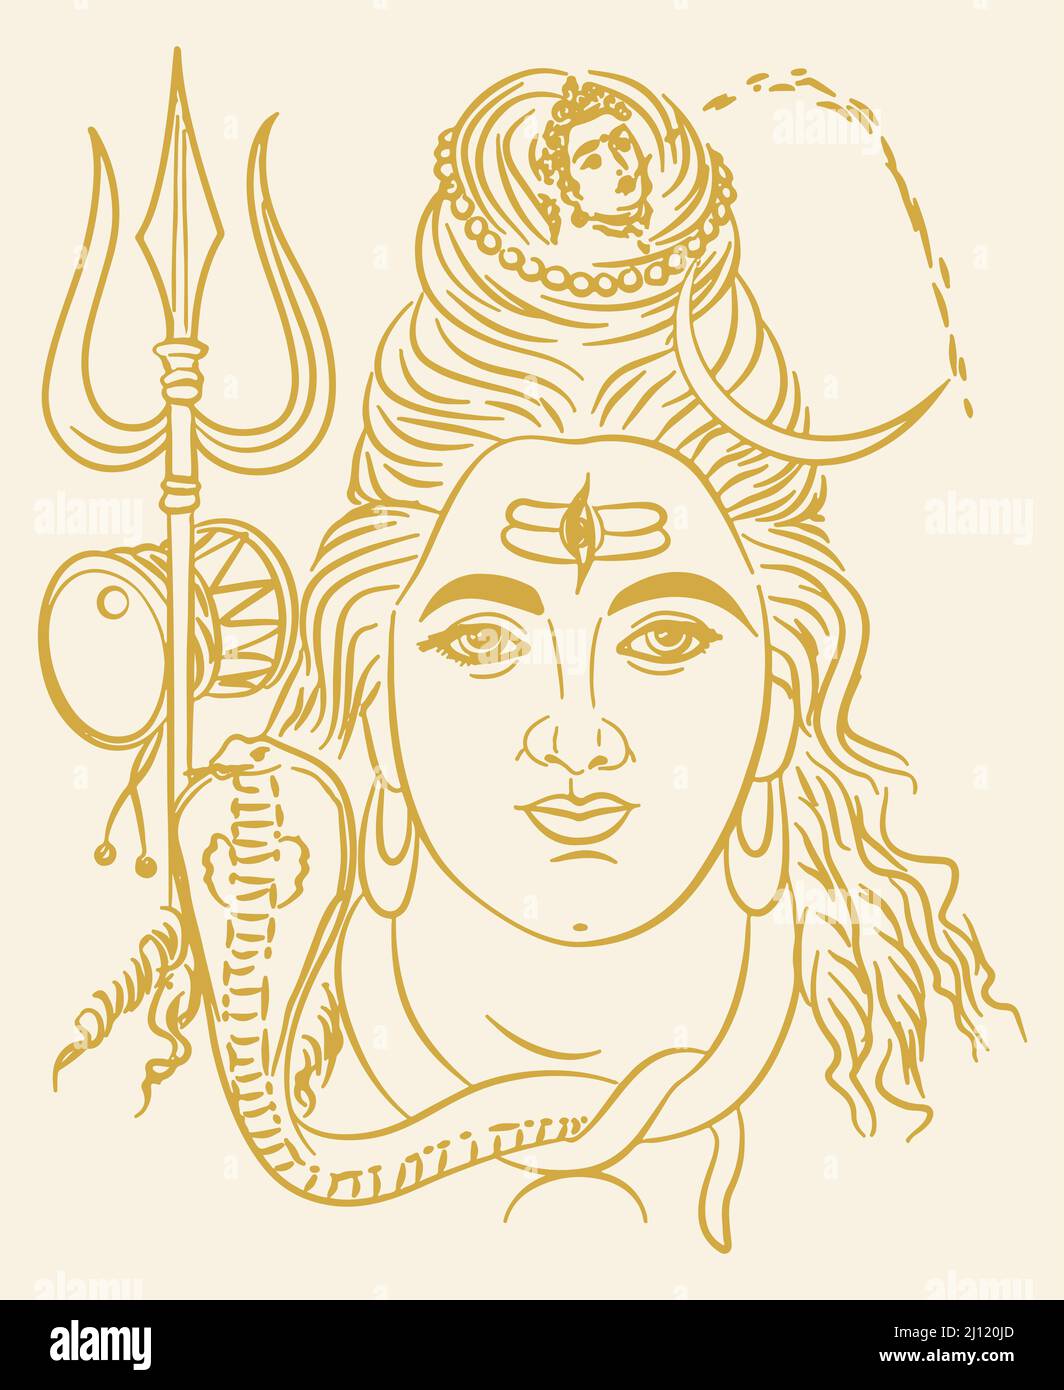 Disegno illustrato di t Lord Shiva di colore giallo su sfondo giallo chiaro Foto Stock